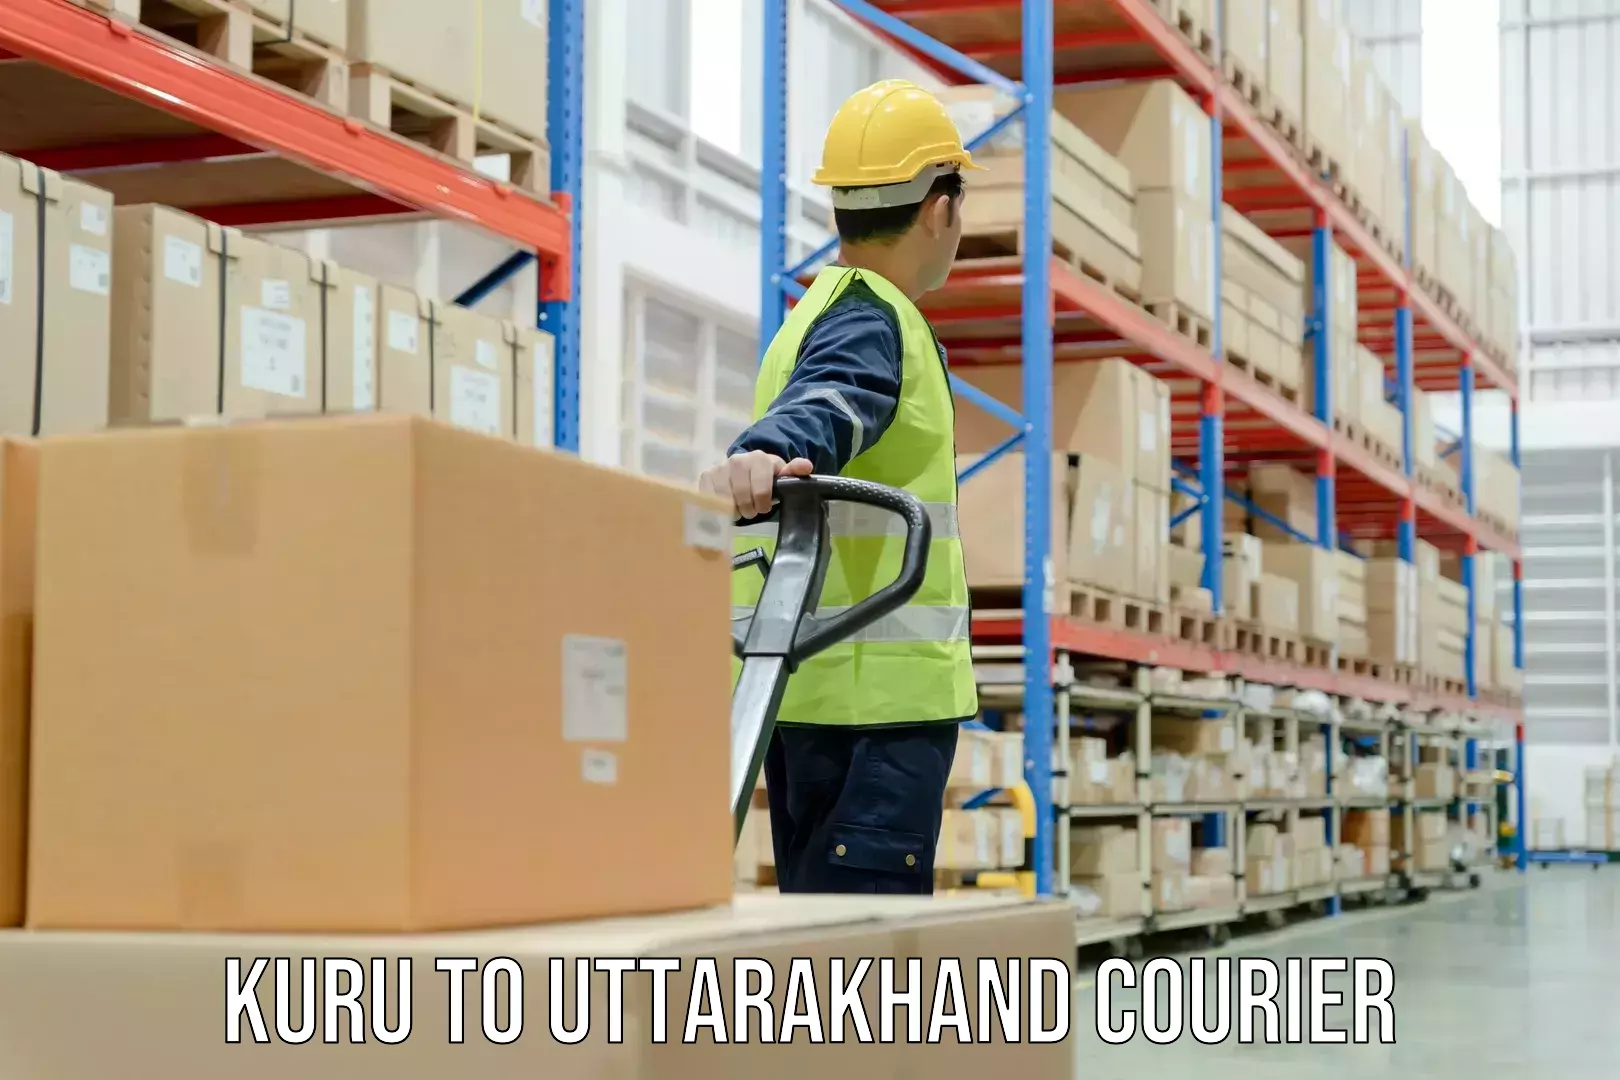 Package tracking Kuru to Uttarakhand